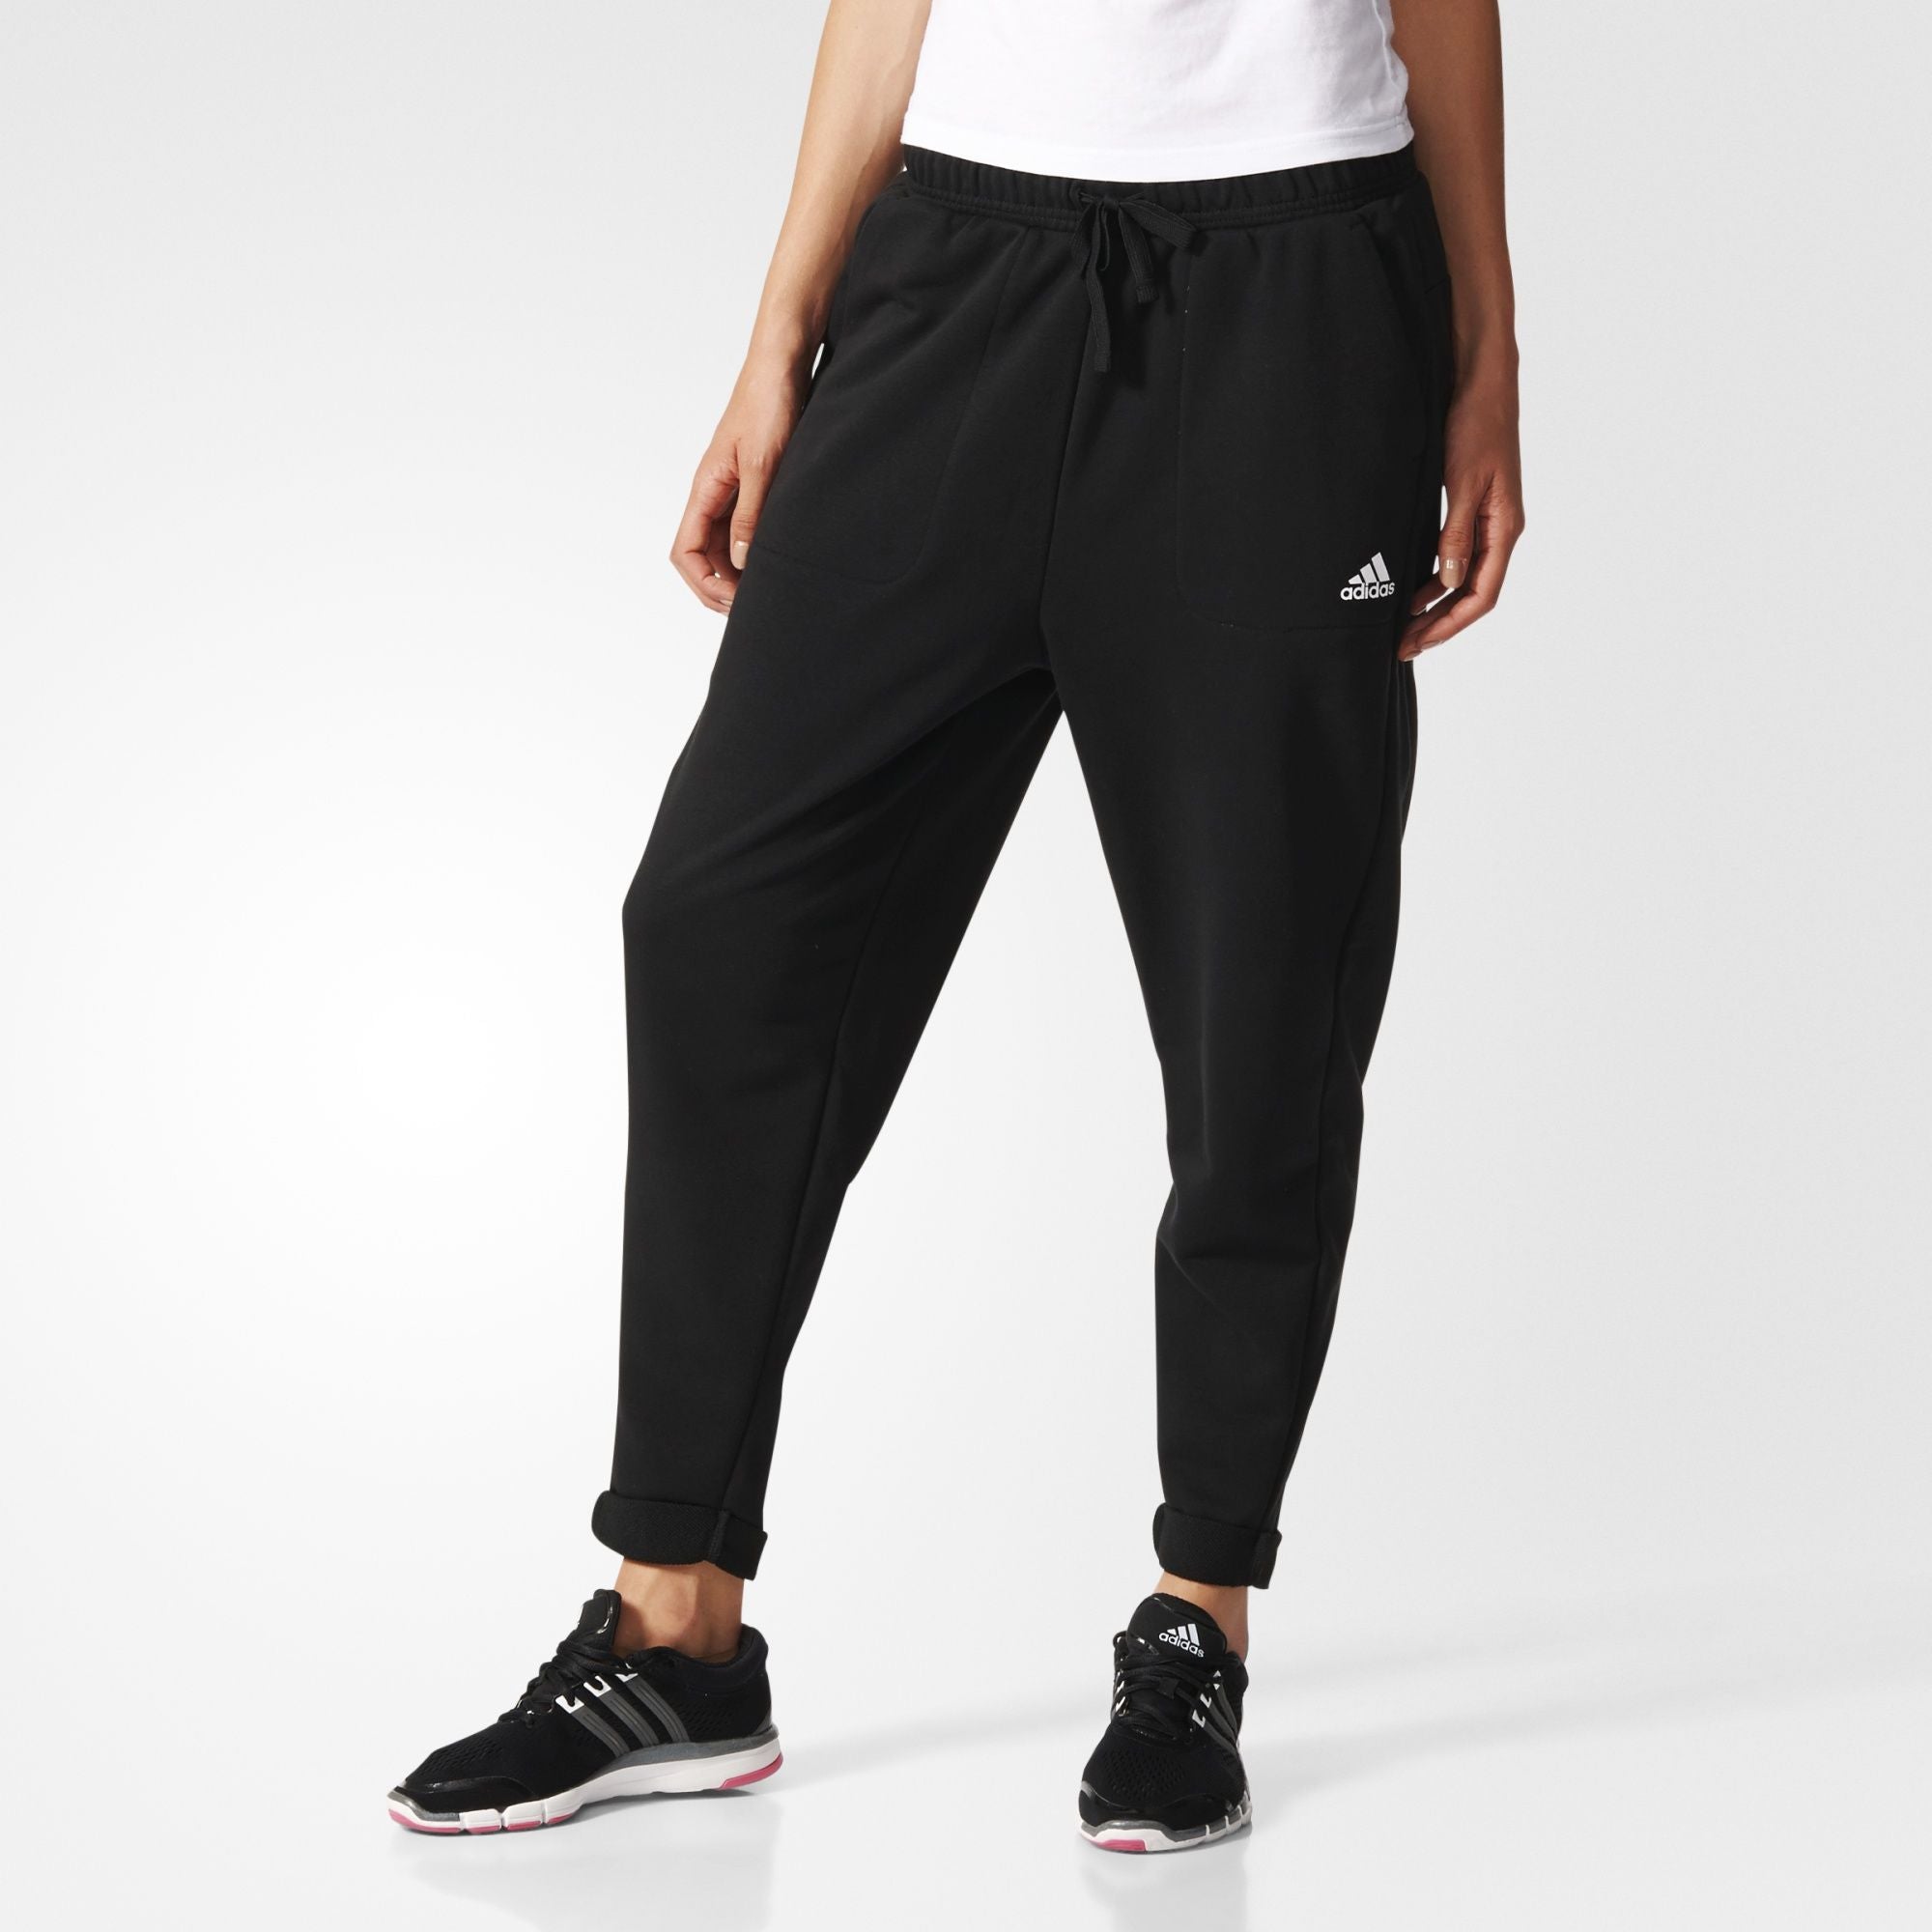 bleek Talloos Verleiden Adidas Women's Essentials Boyfriend Pants Black-S97161 – Mann Sports Outlet